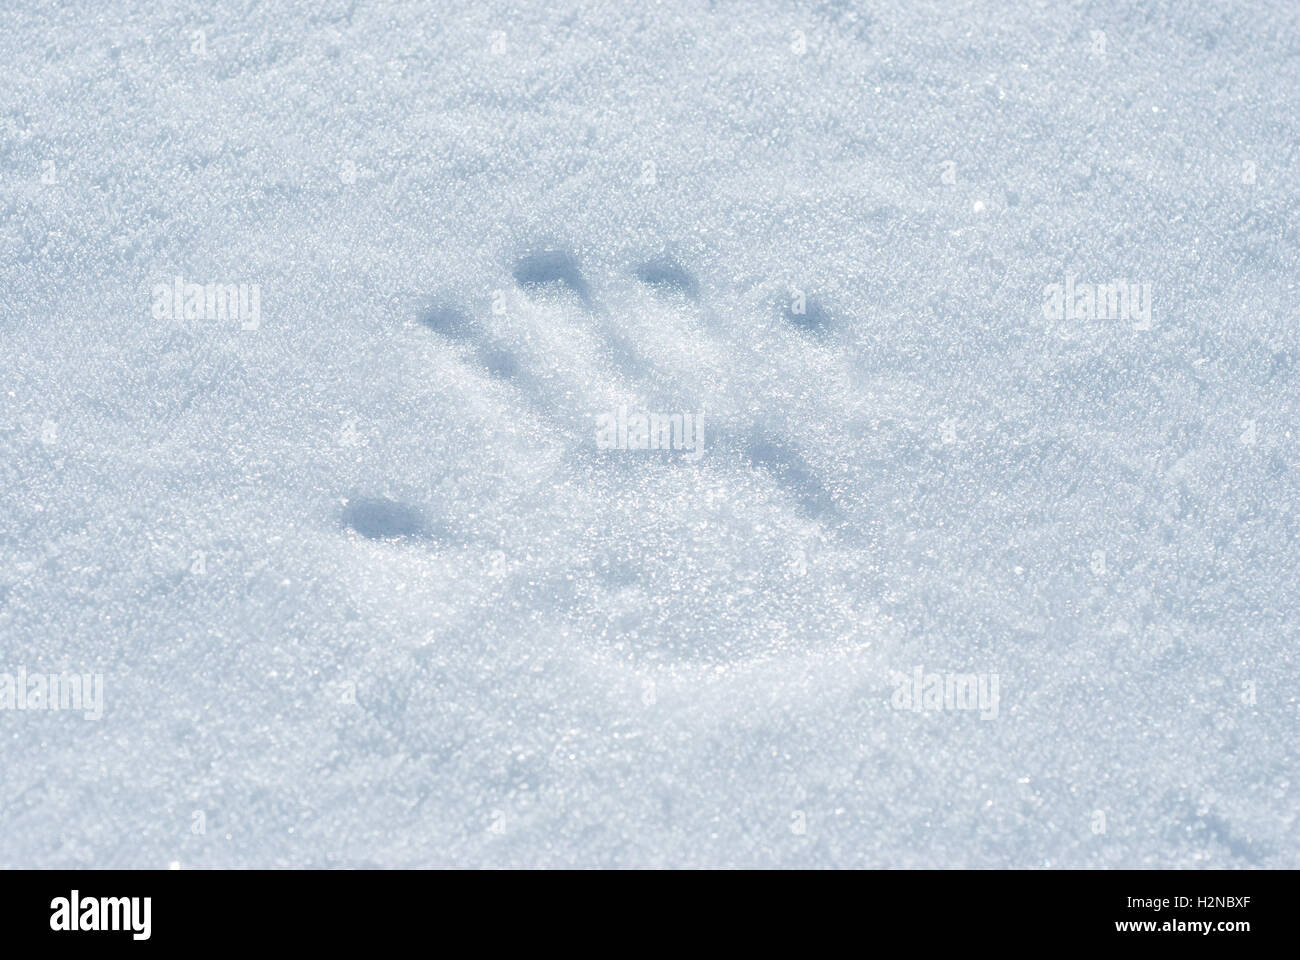 Handabdruck mit leichtem Druck auf die Schneeoberfläche gemacht. Stockfoto